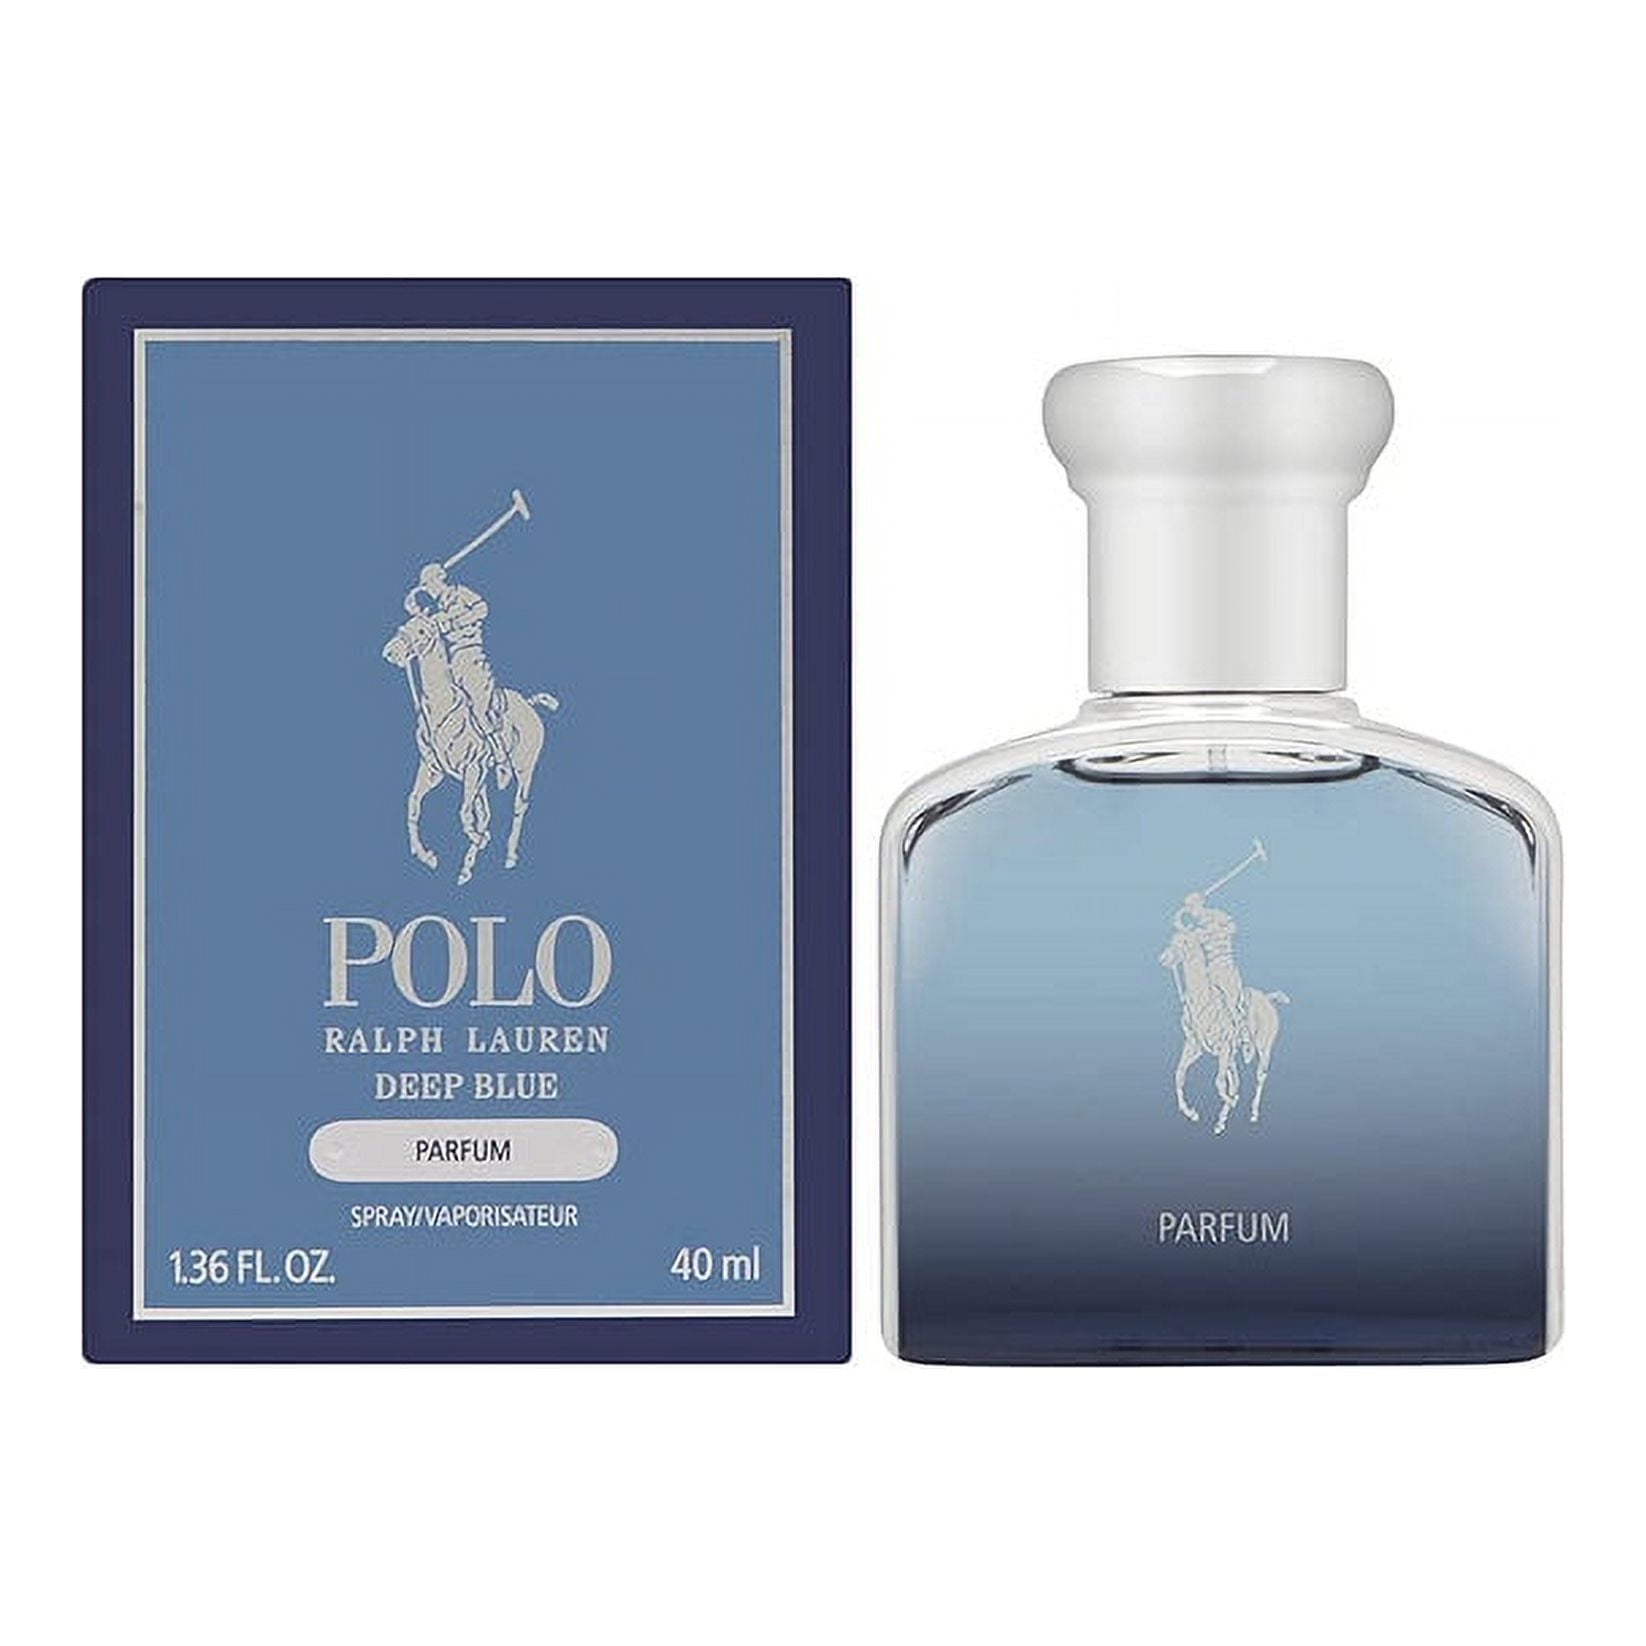 Polo Deep Blue by Ralph Lauren Parfum Spray 1.36 oz For MEN - Walmart.com